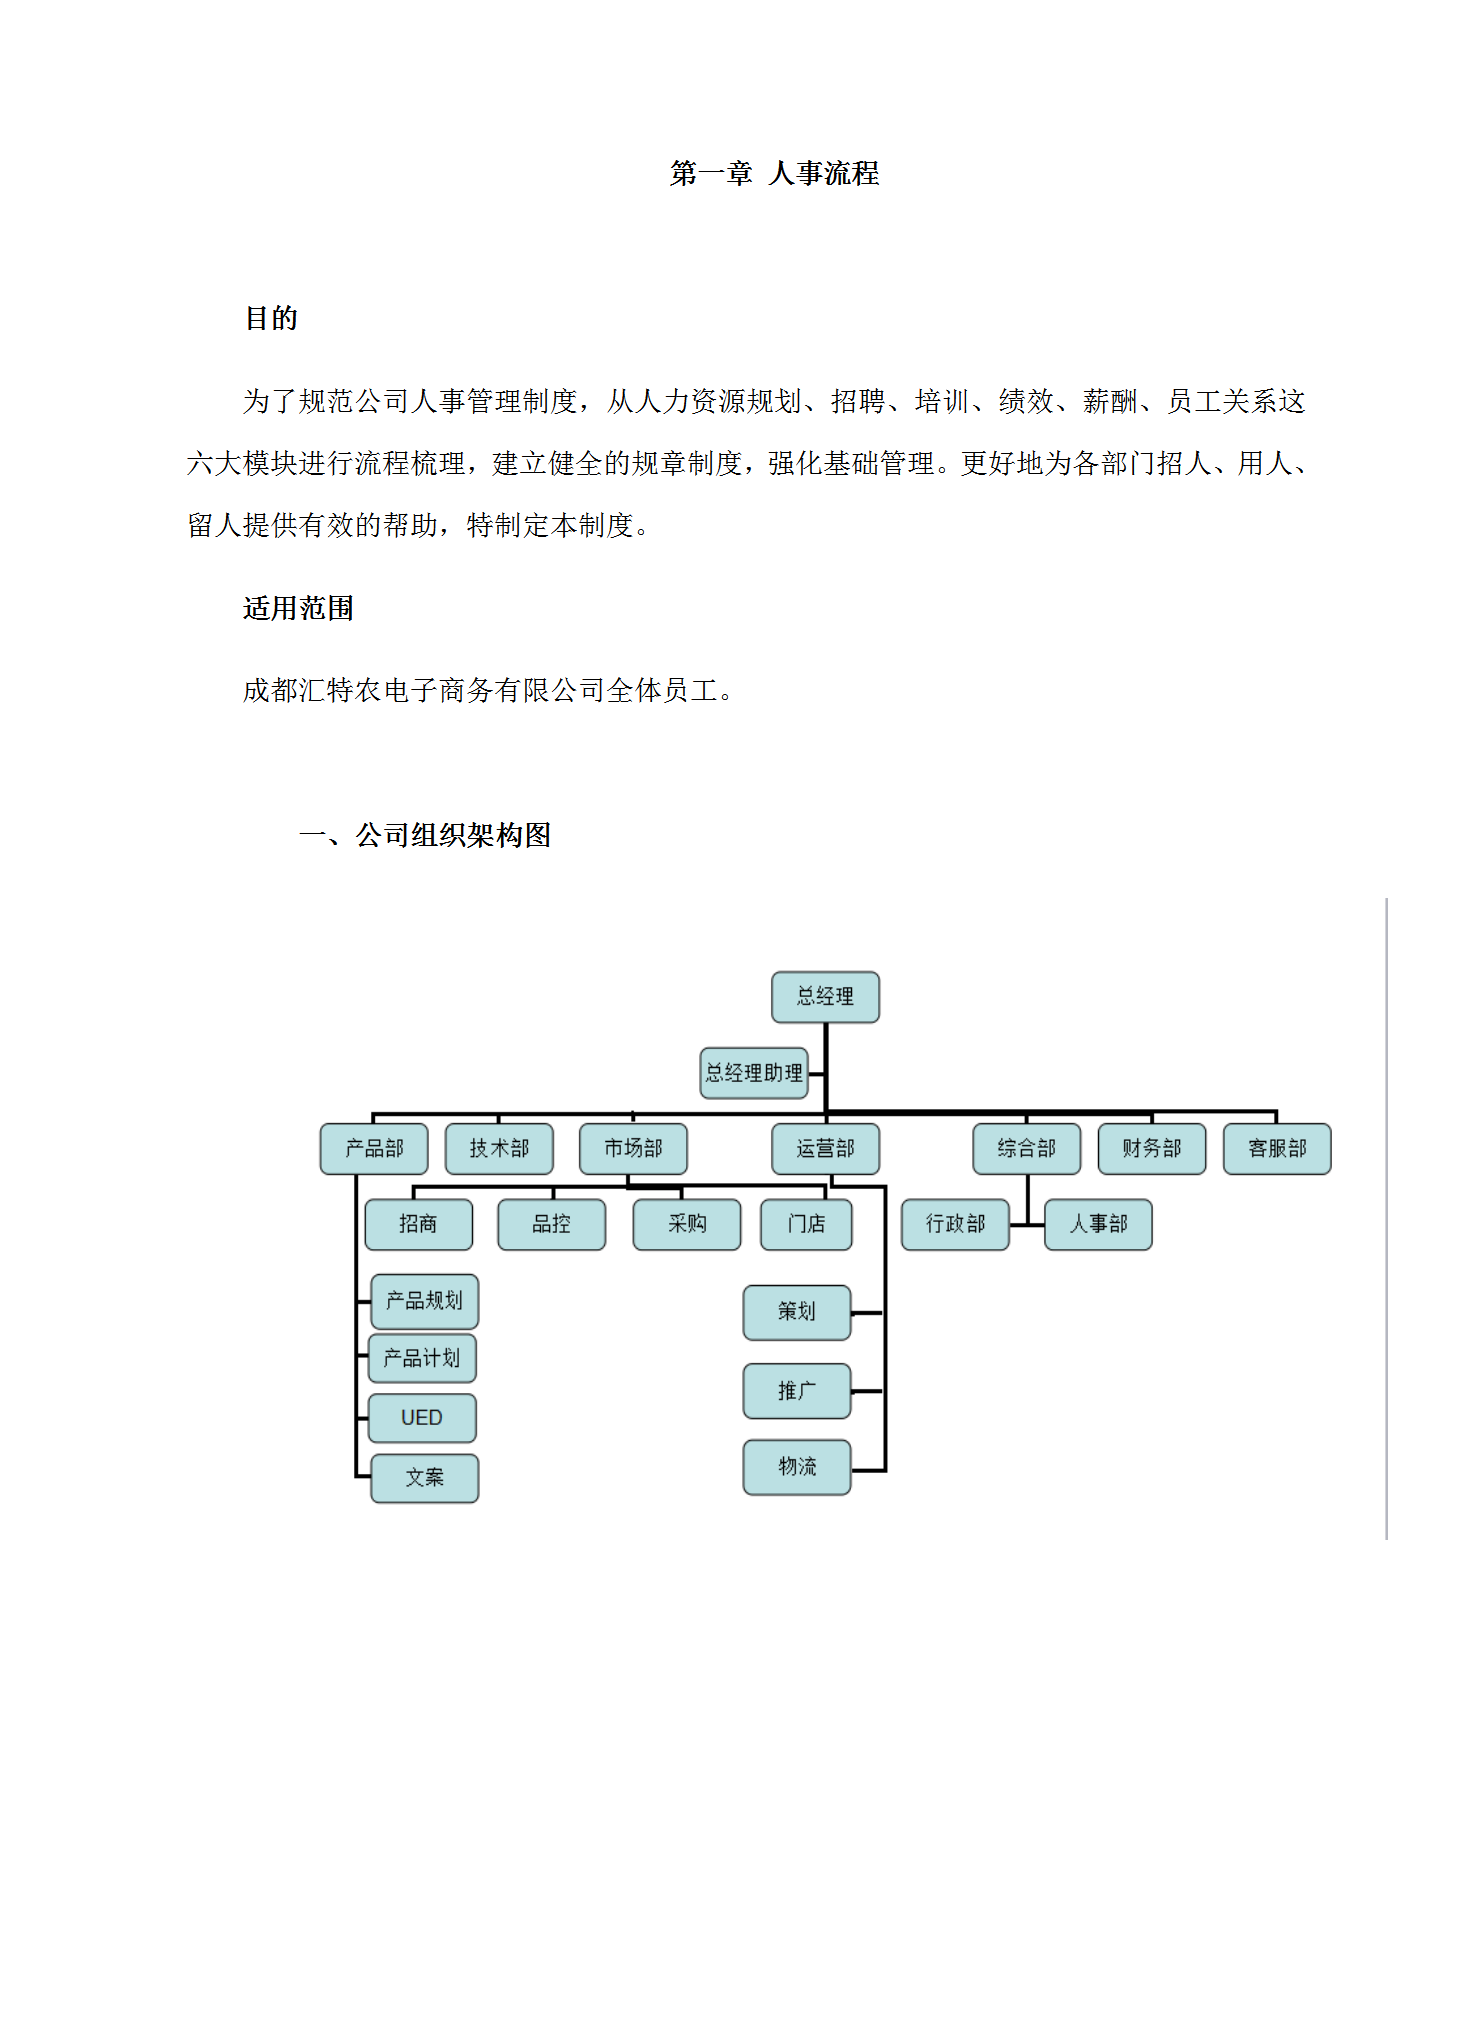 某电子商务有限公司日常人事管理制度word模板-2